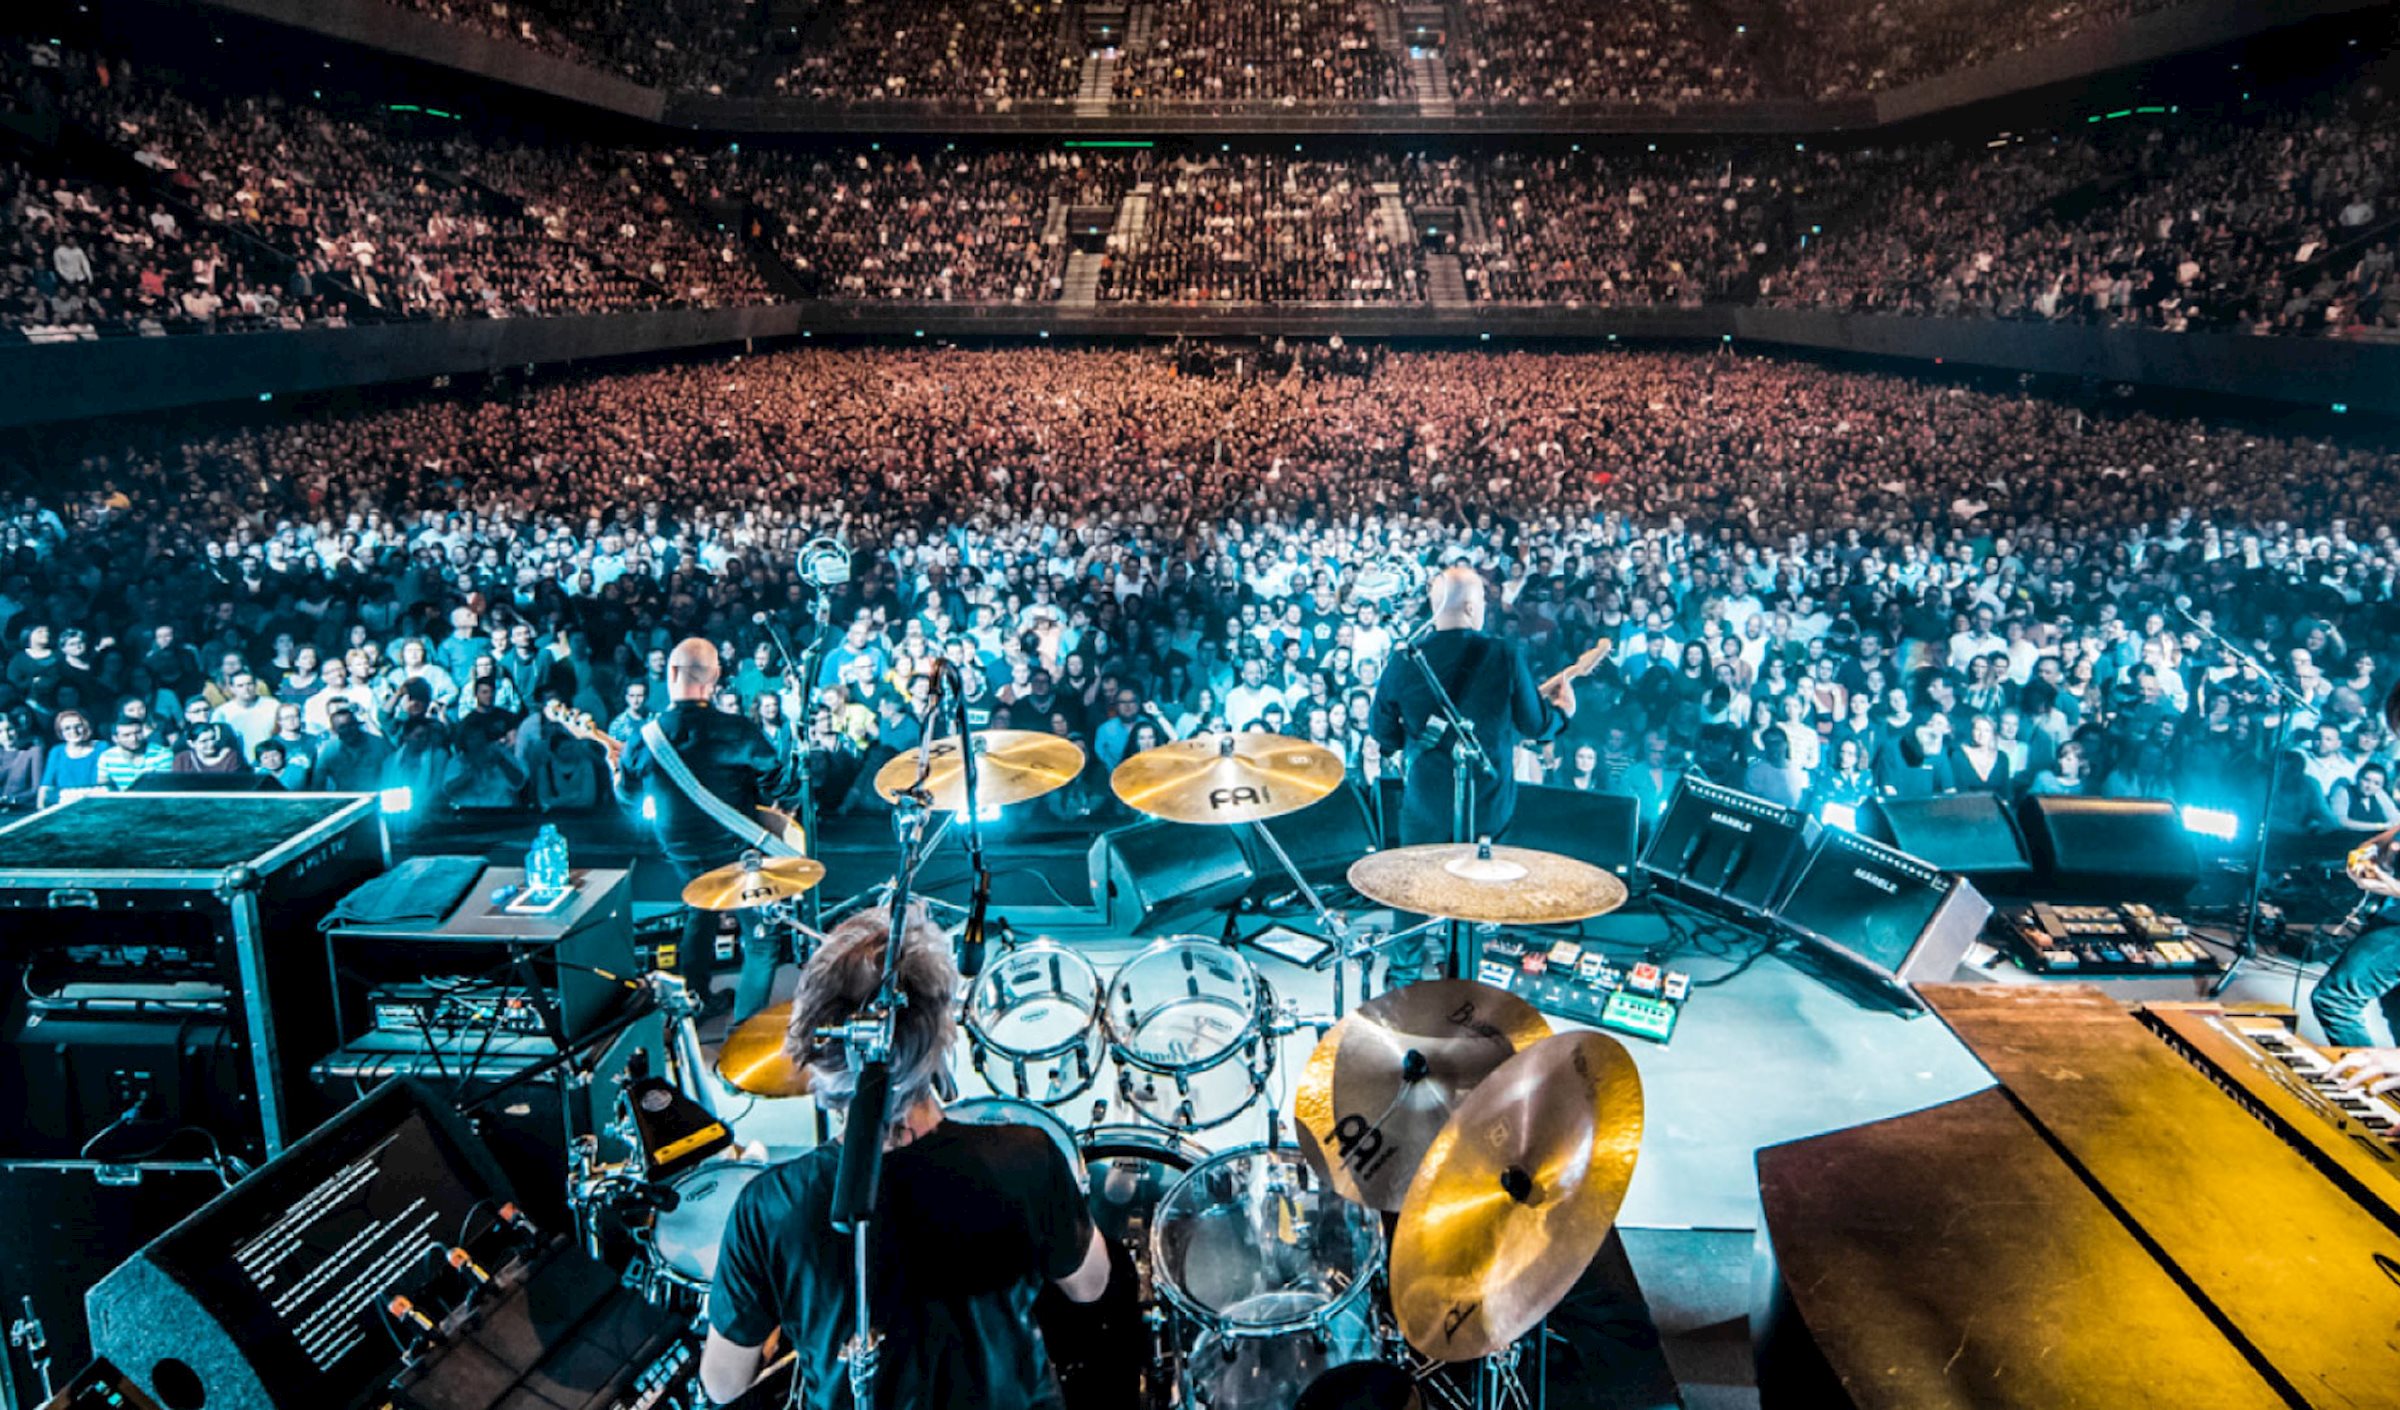 Le légendaire groupe de rock néerlandais BLØF est monté sur scène dans le Ziggo Dome d'Amsterdam, qui affichait complet. 17 000 fans s'étaient rassemblés pour assister à un spectacle spectaculaire et plein de surprises offert par PRG.